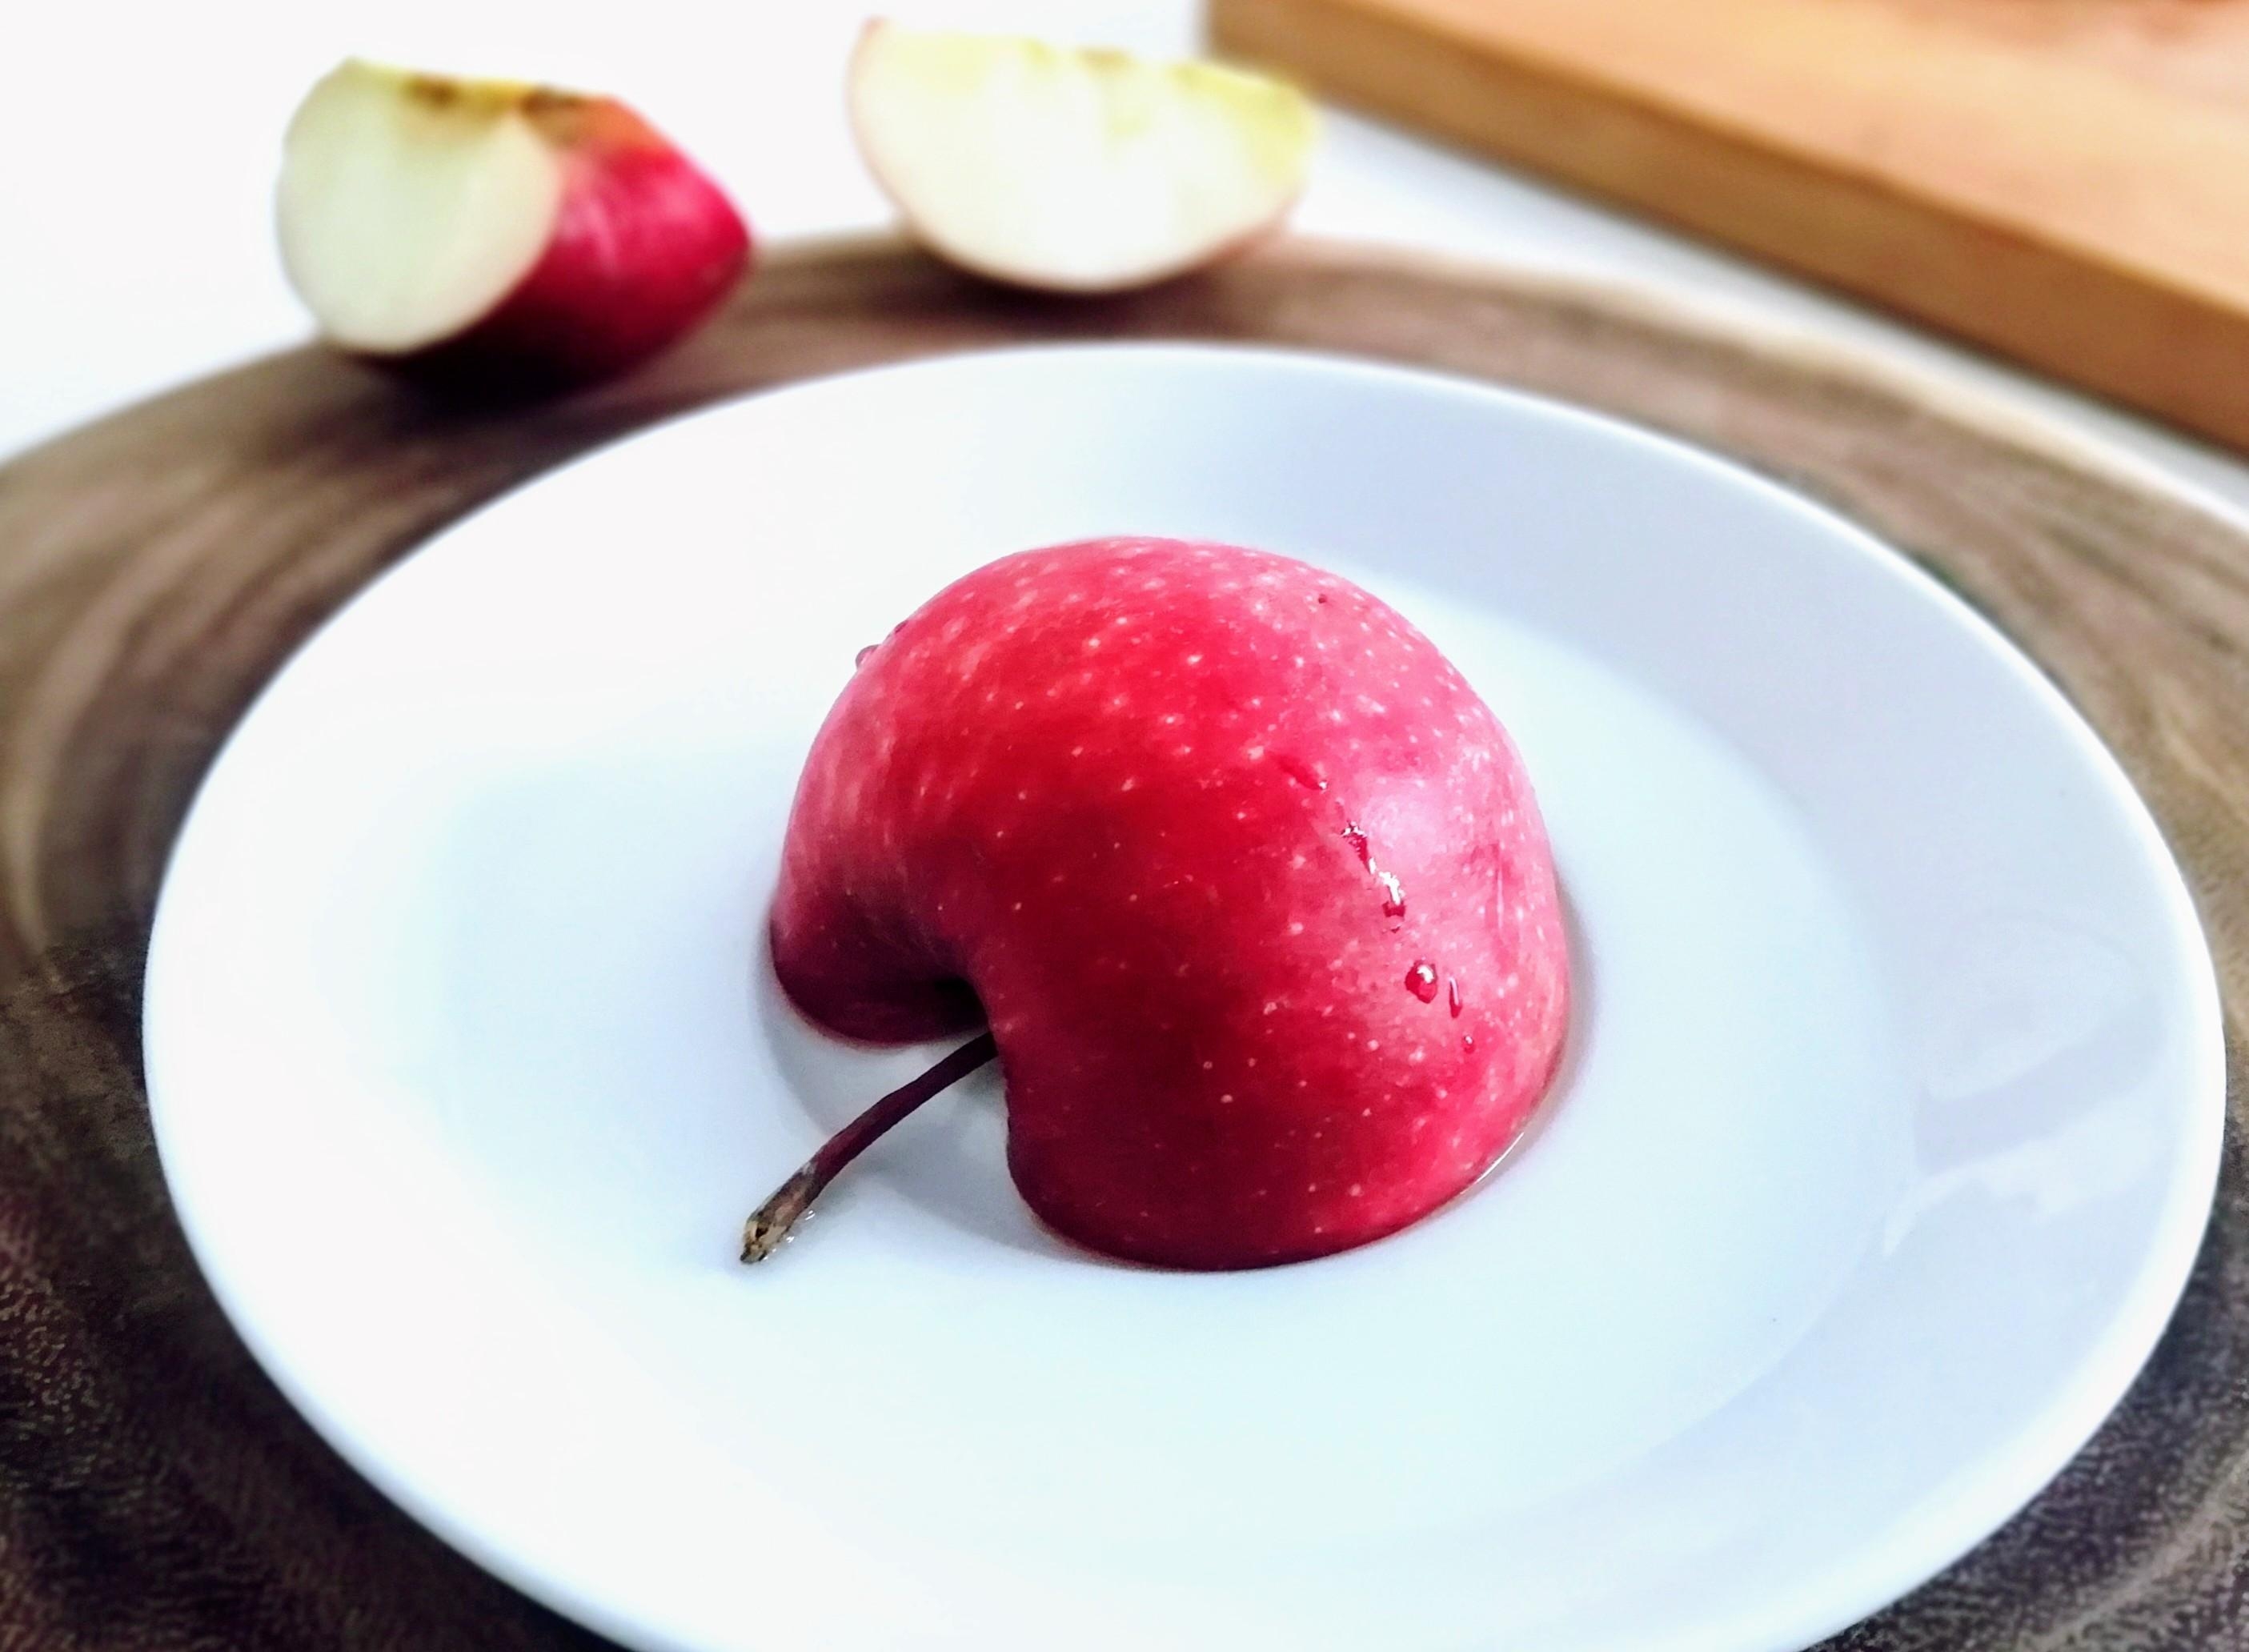 An apple a day keeps the doctor away. 😁 #Äpfel #Herbst #Küche 